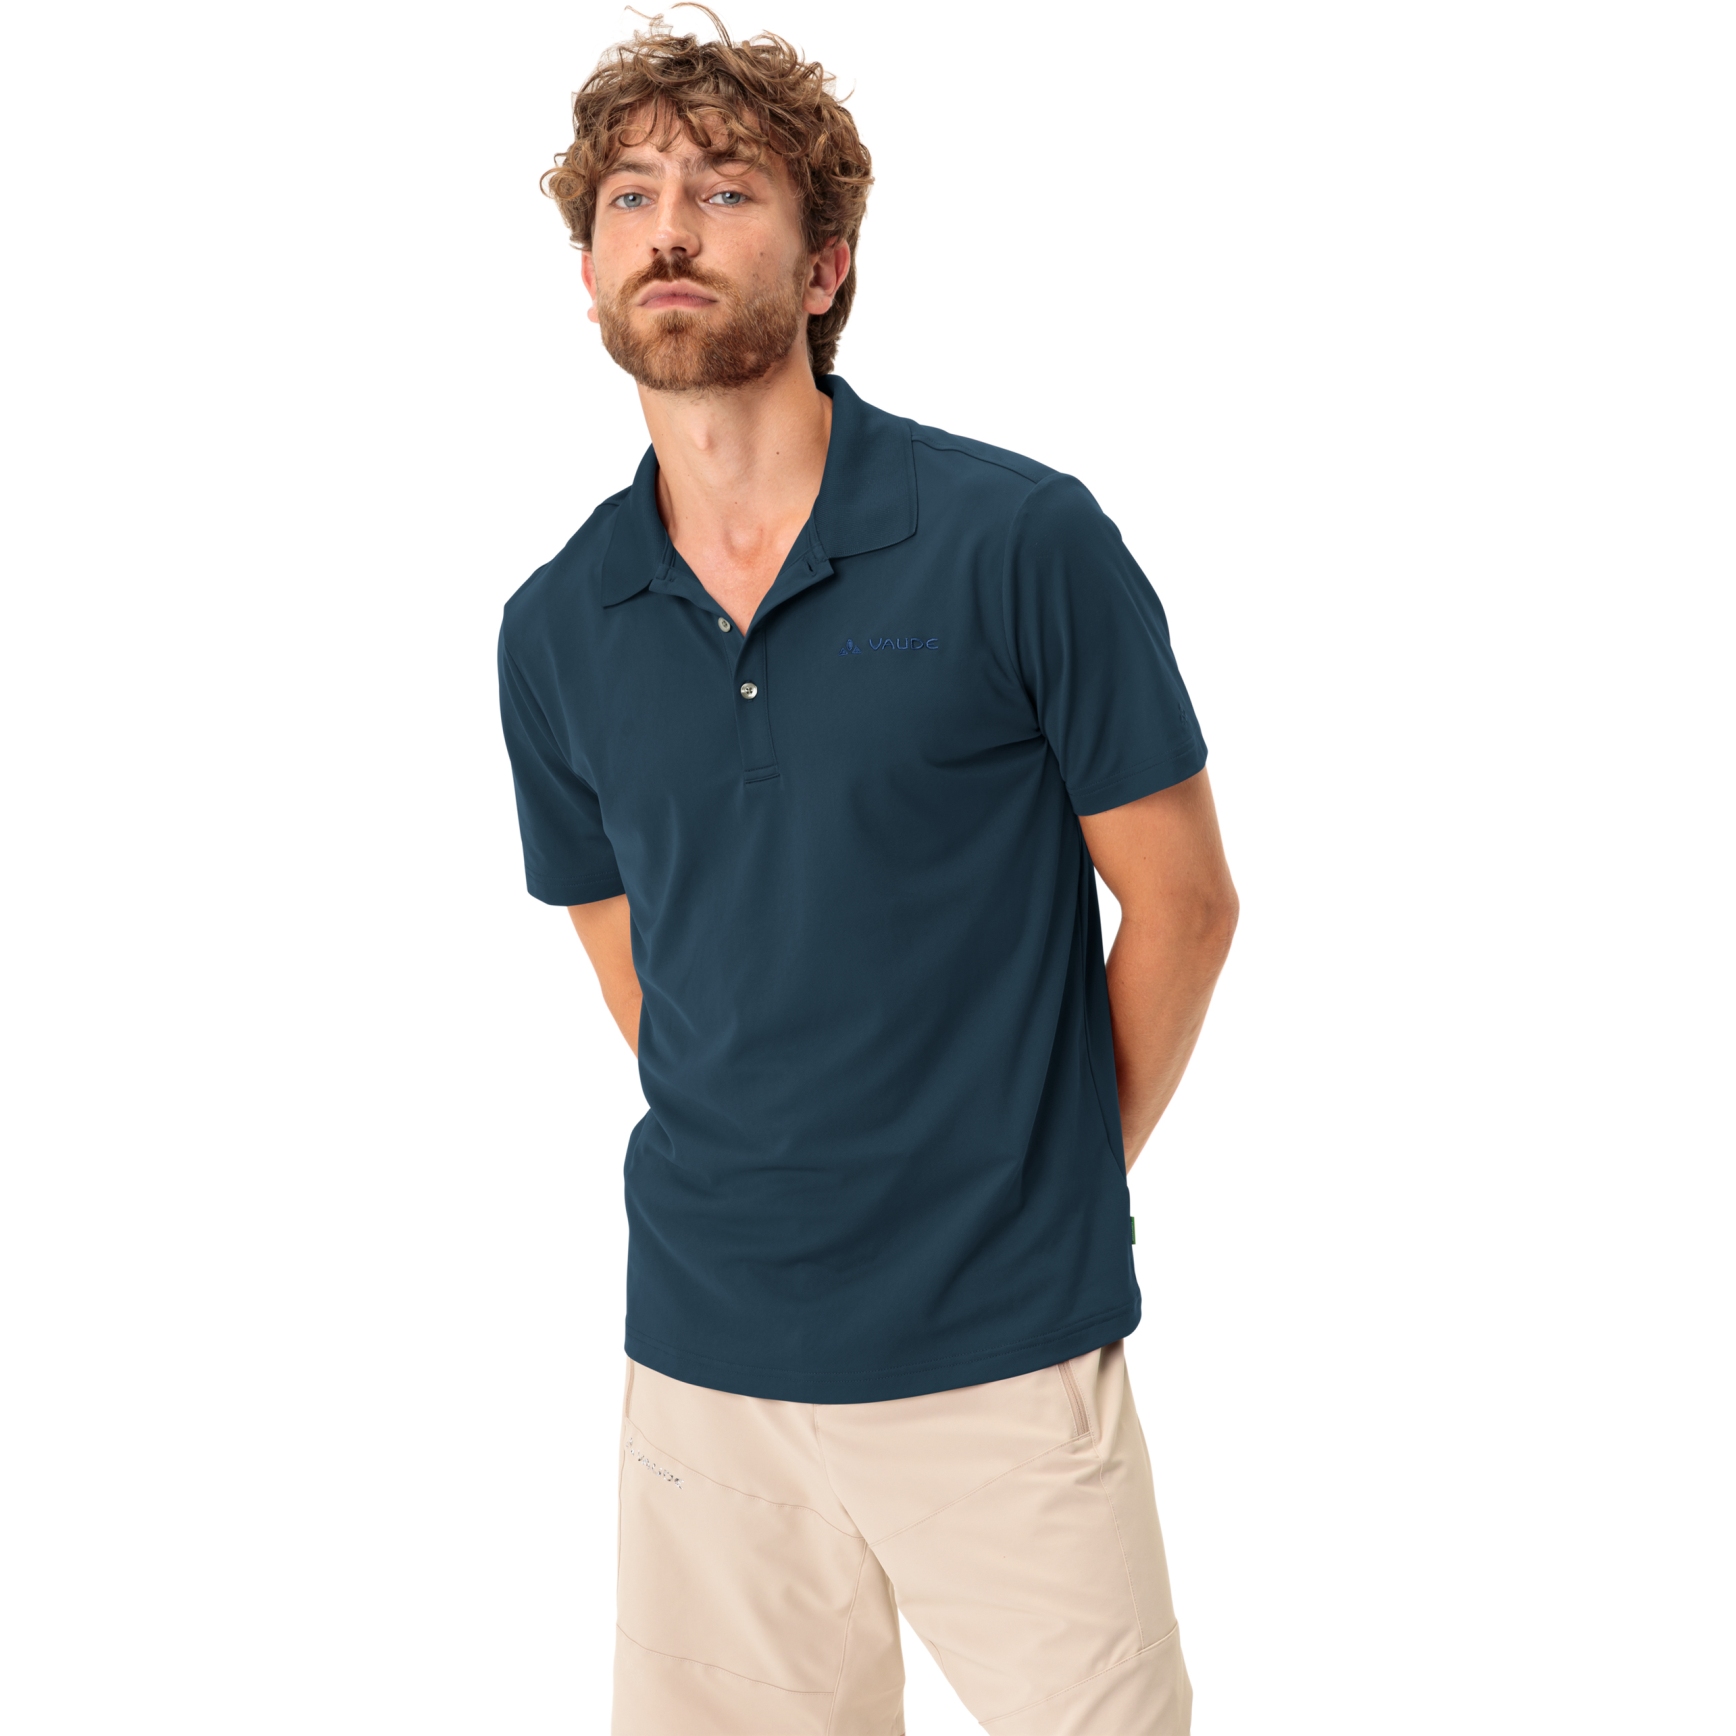 Produktbild von Vaude Essential Polo Shirt Herren - dark sea